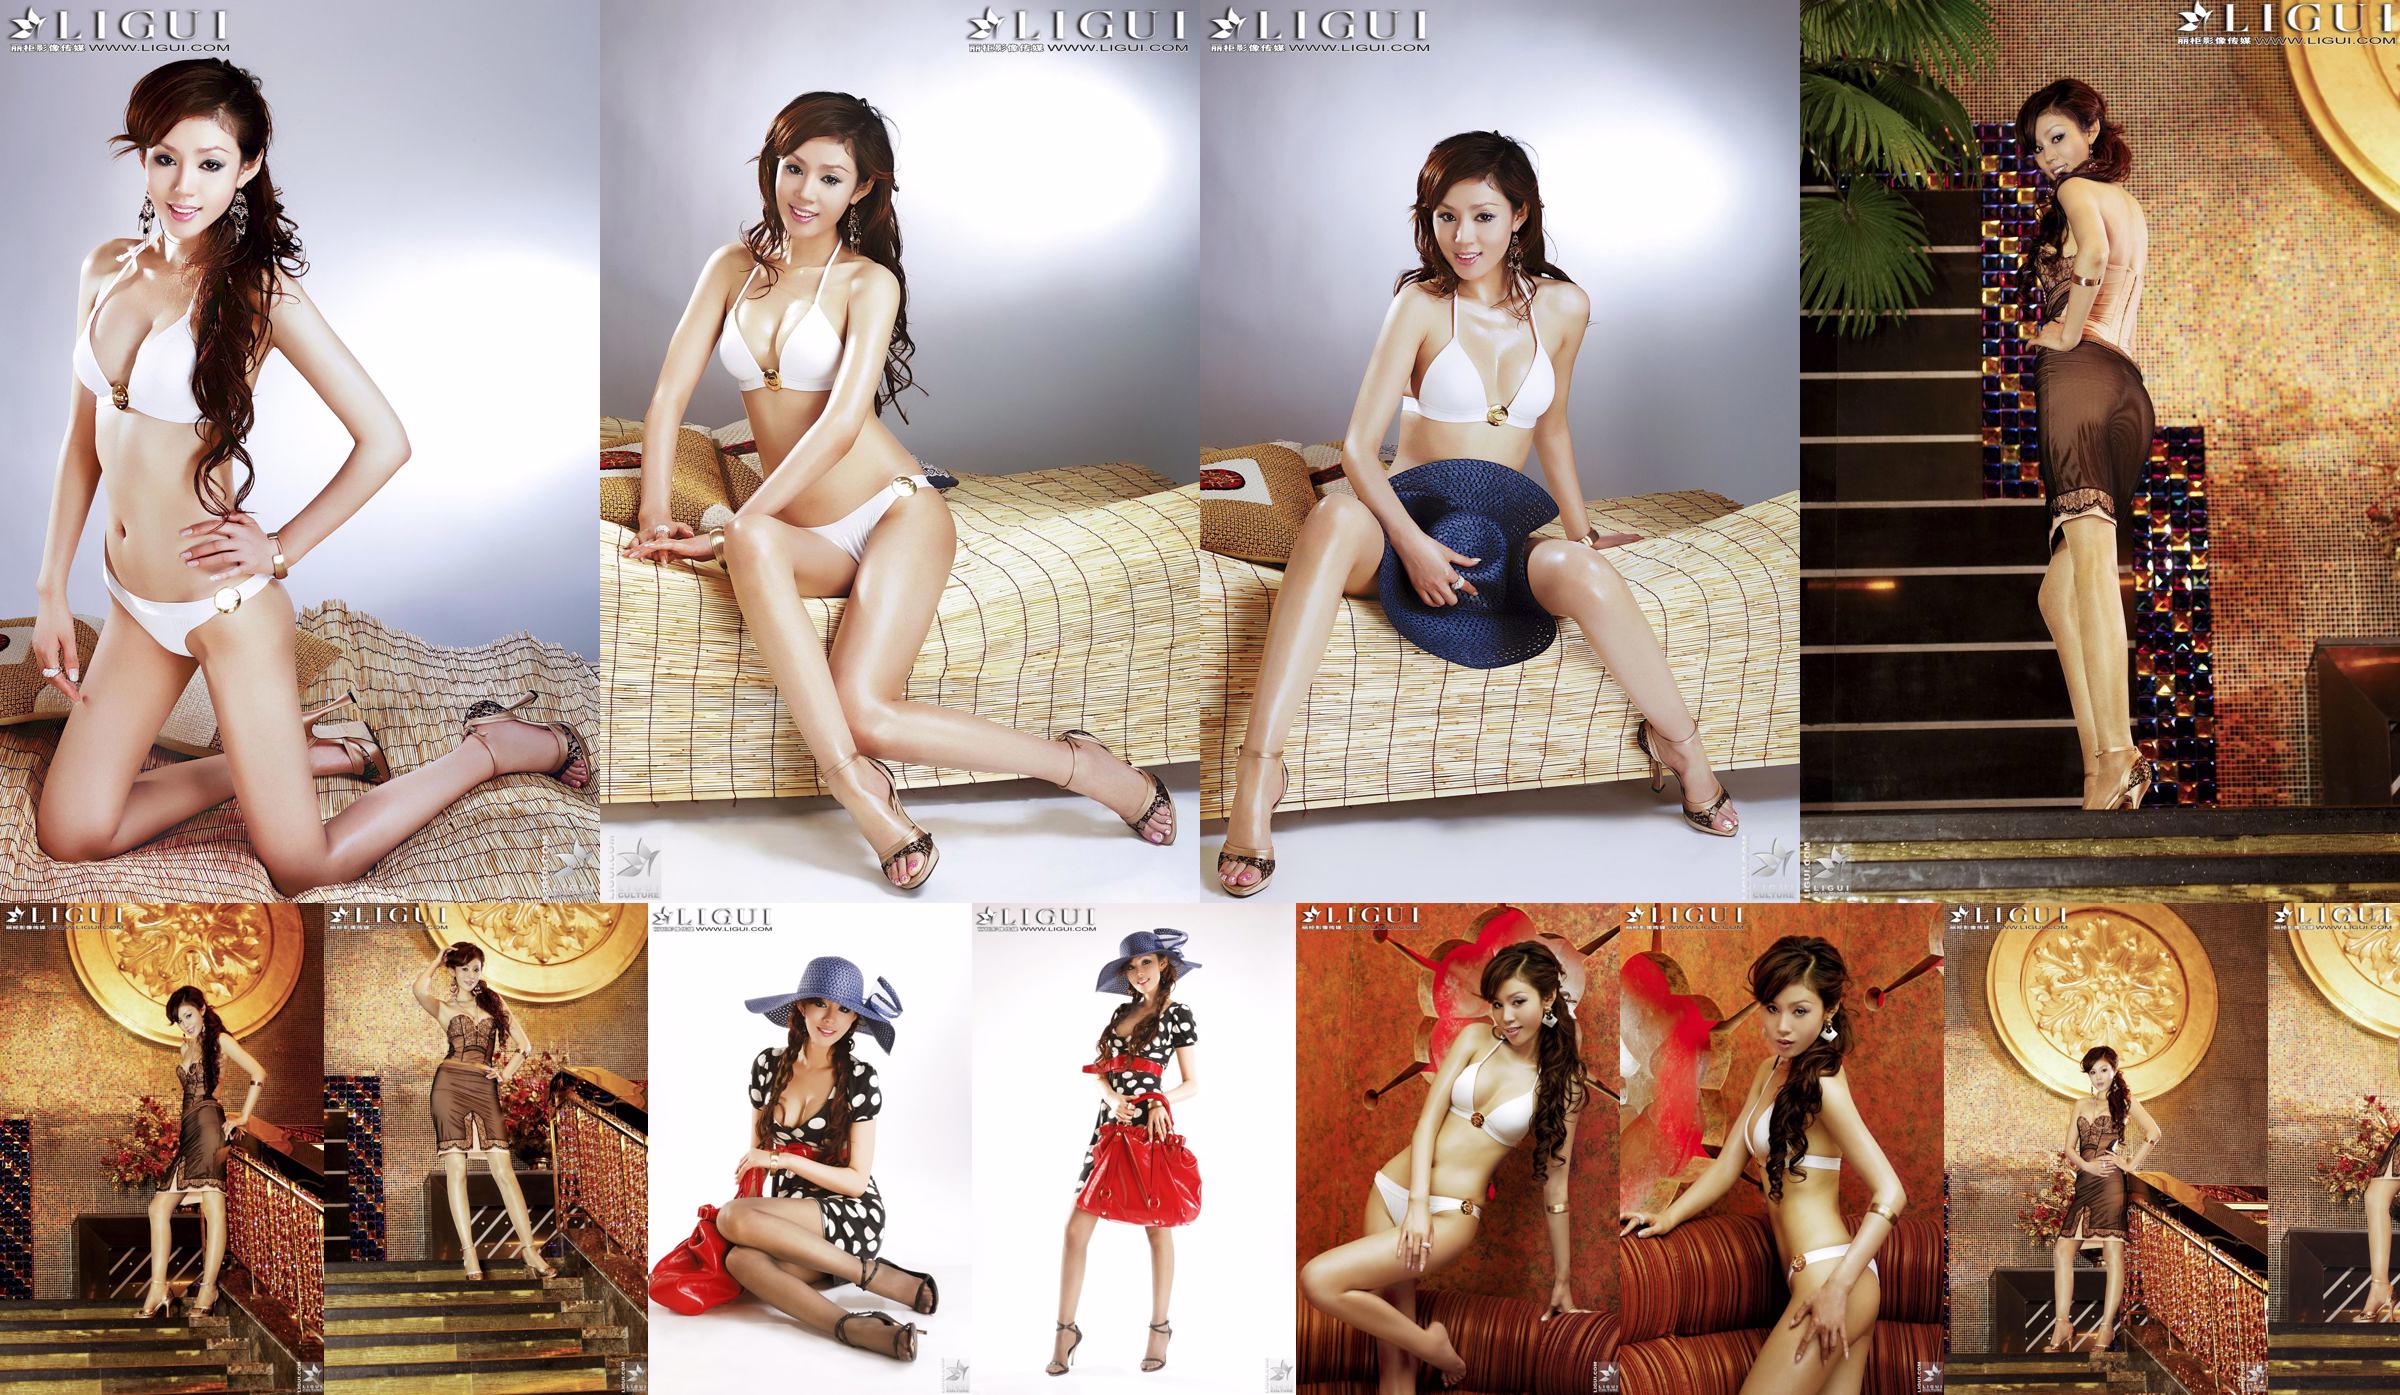 [丽 柜 LiGui] Foto de "Biquíni + Vestido" da modelo Yao Jinjin com belas pernas e pés sedosos No.bcce78 Página 1